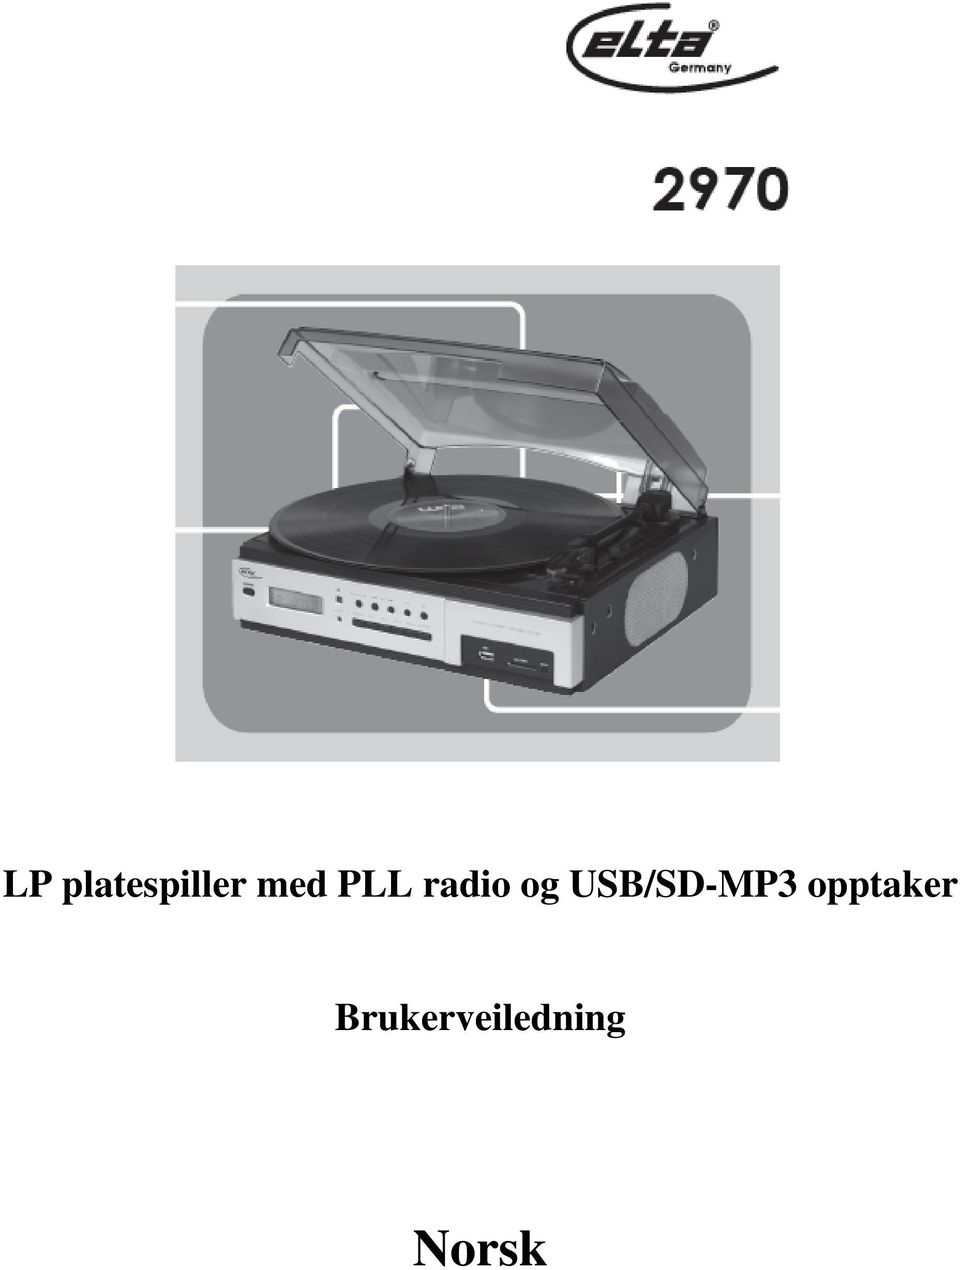 USB/SD-MP3